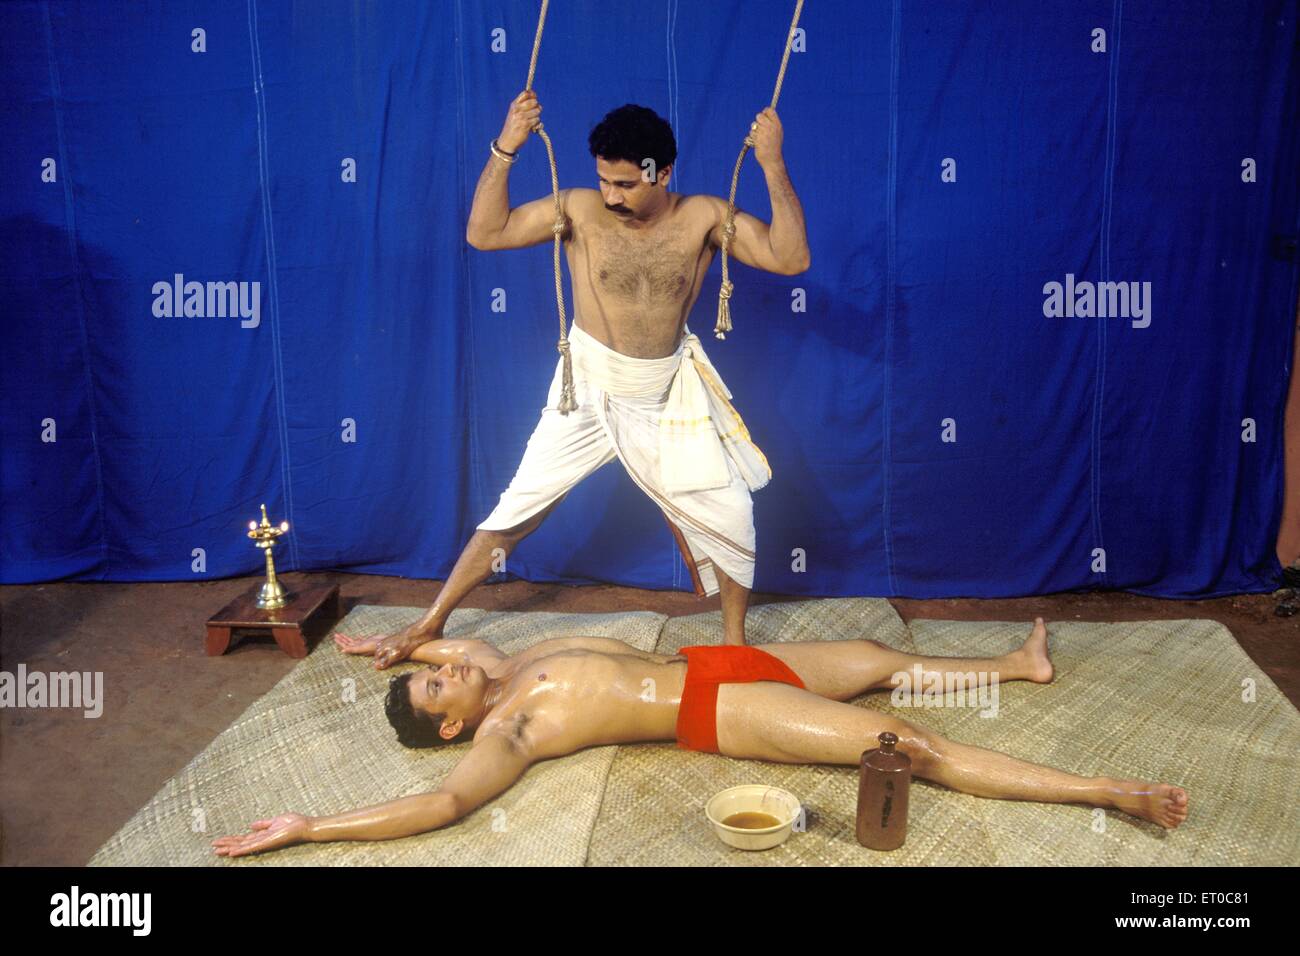 Chavitti Uzhichil Körpermassage zu Fuß, Fußmassage, Fußmassage, ayurvedische medizinische Ölbehandlung, Kerala, Indien, Asien, Asiatisch, Indian, MR#777C Stockfoto